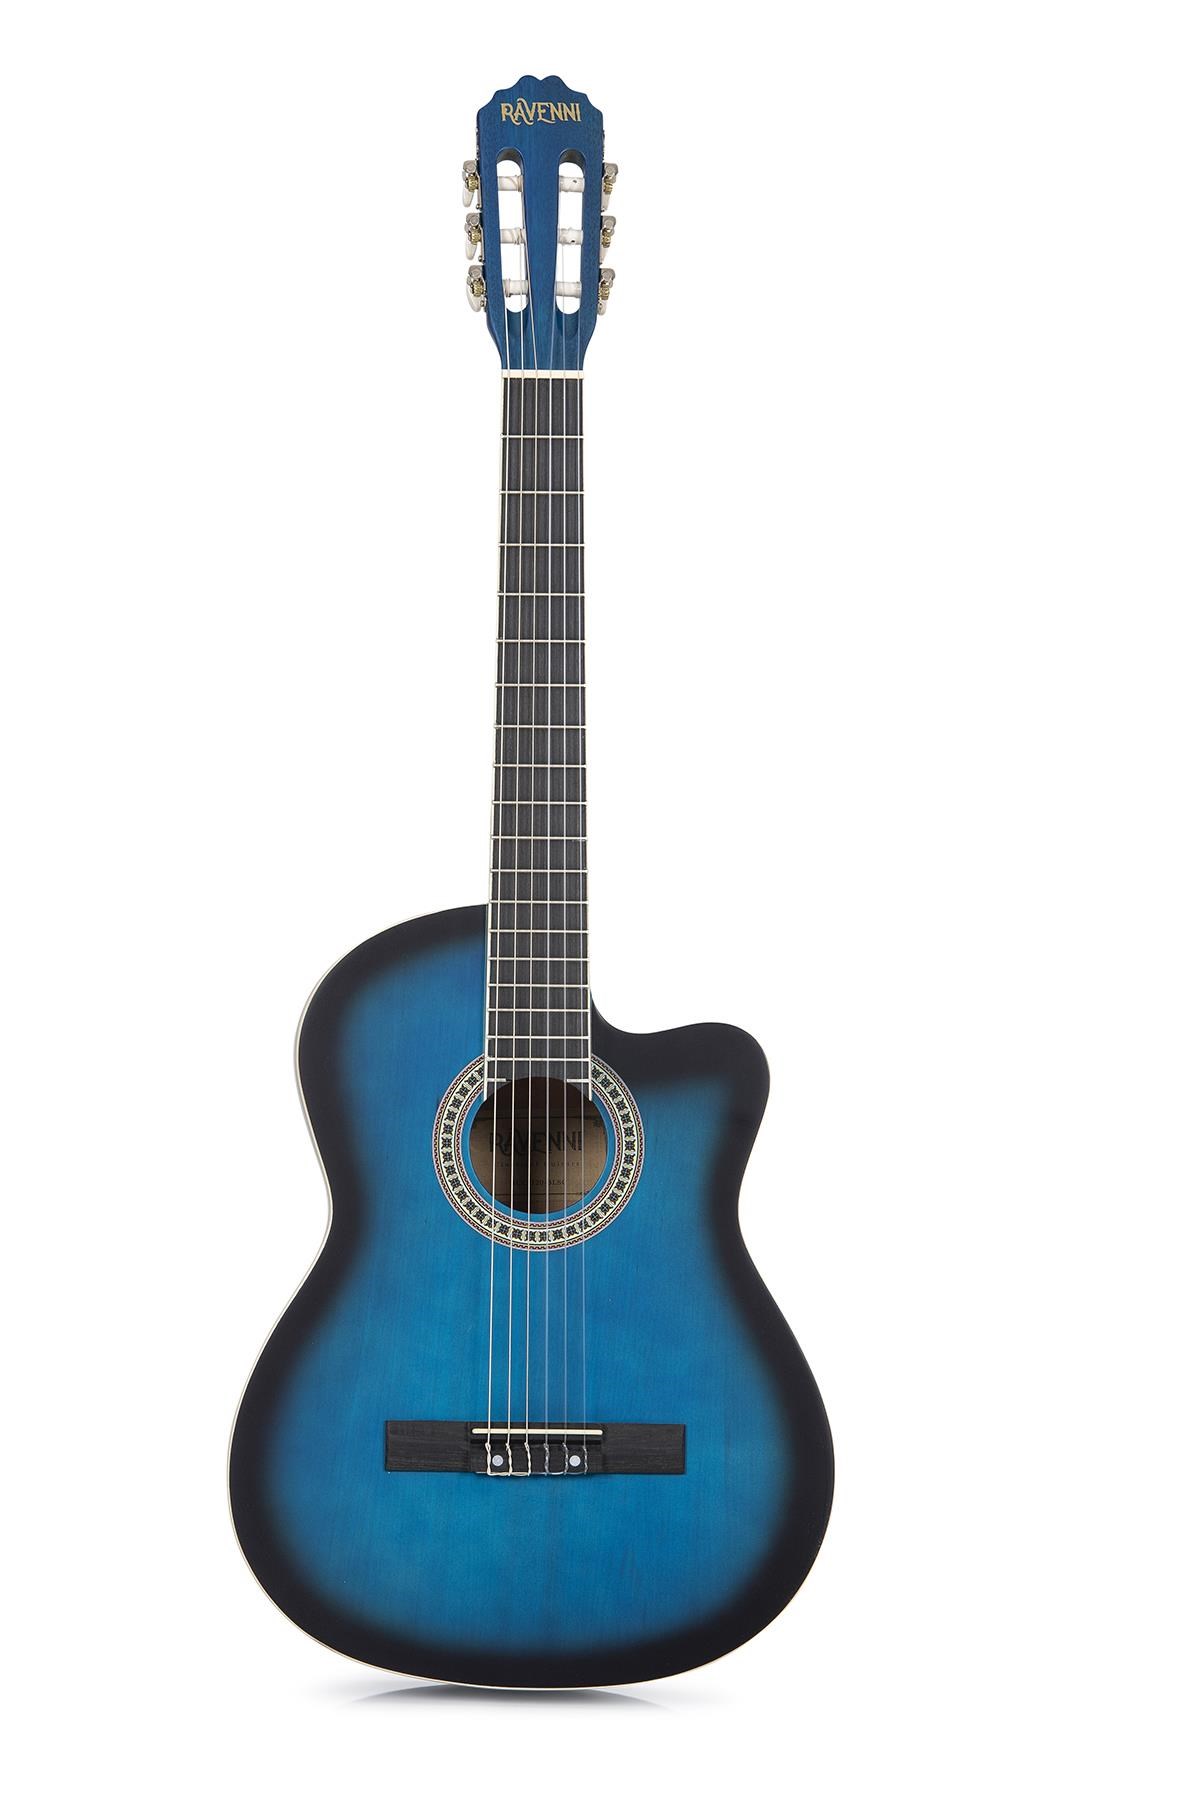 Ravenni RCG120BLC Mavi Klasik Kesik Kasa Gitar